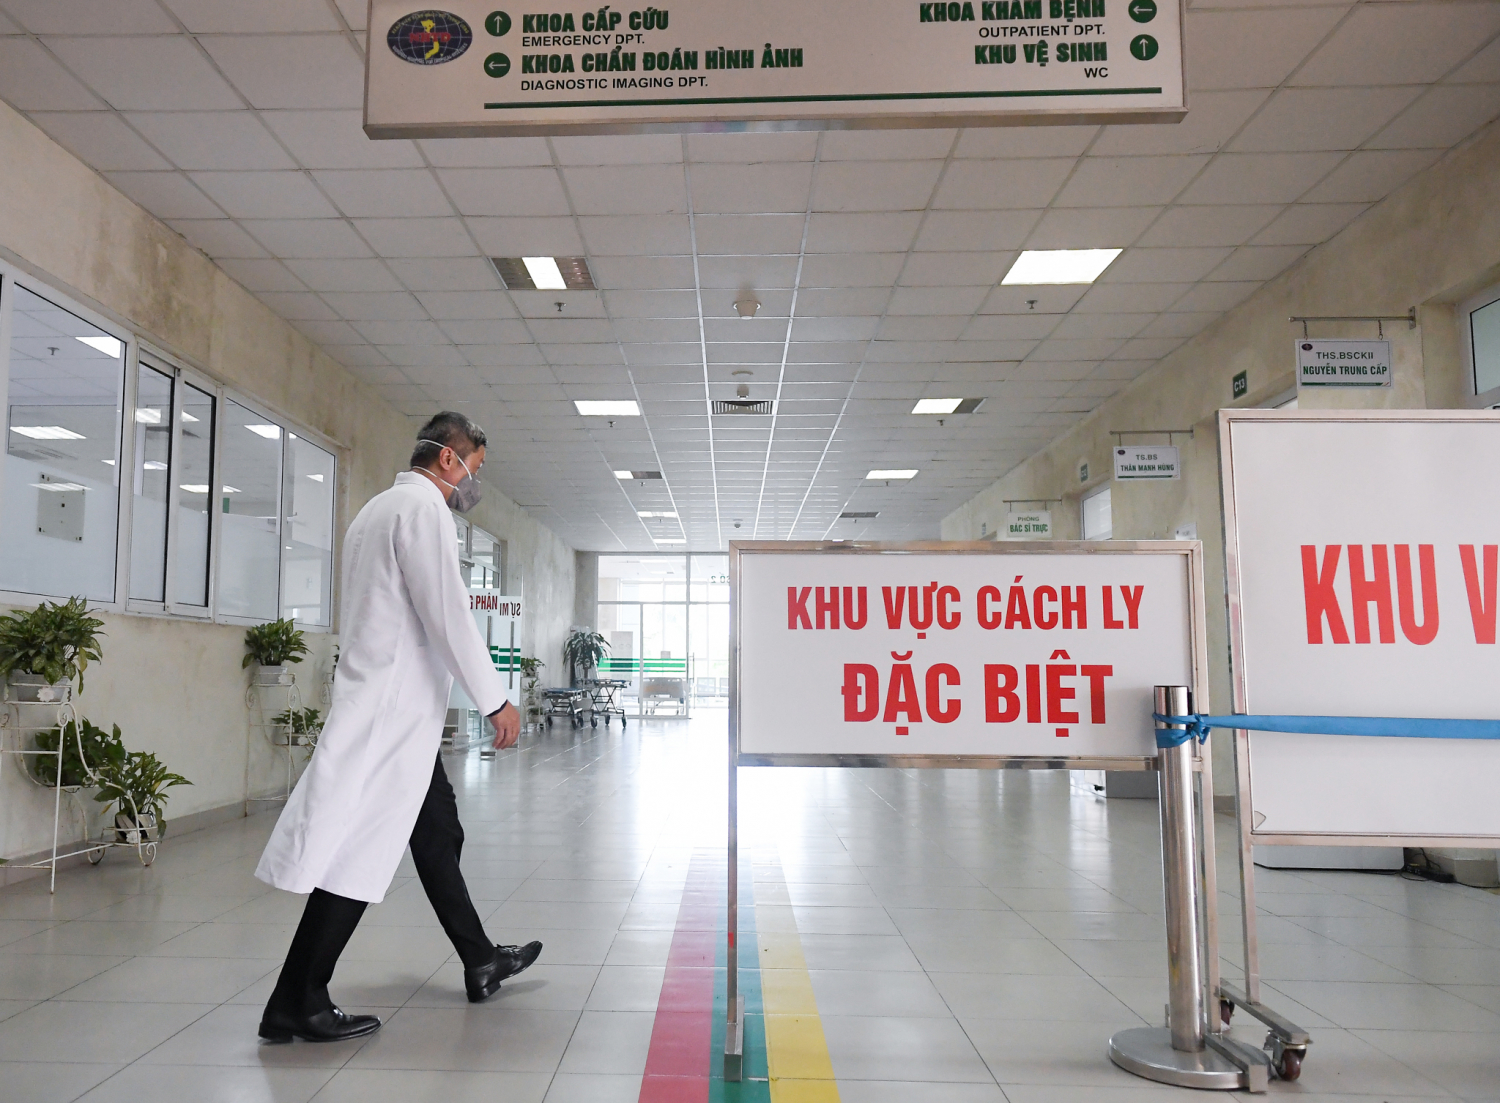 Bệnh viện Bệnh Nhiệt đới Trung ương cơ sở 2 Đông Anh (Hà Nội) đang điều trị khá nhiều ca mắc Covid-19. Ảnh: Bộ Y tế.